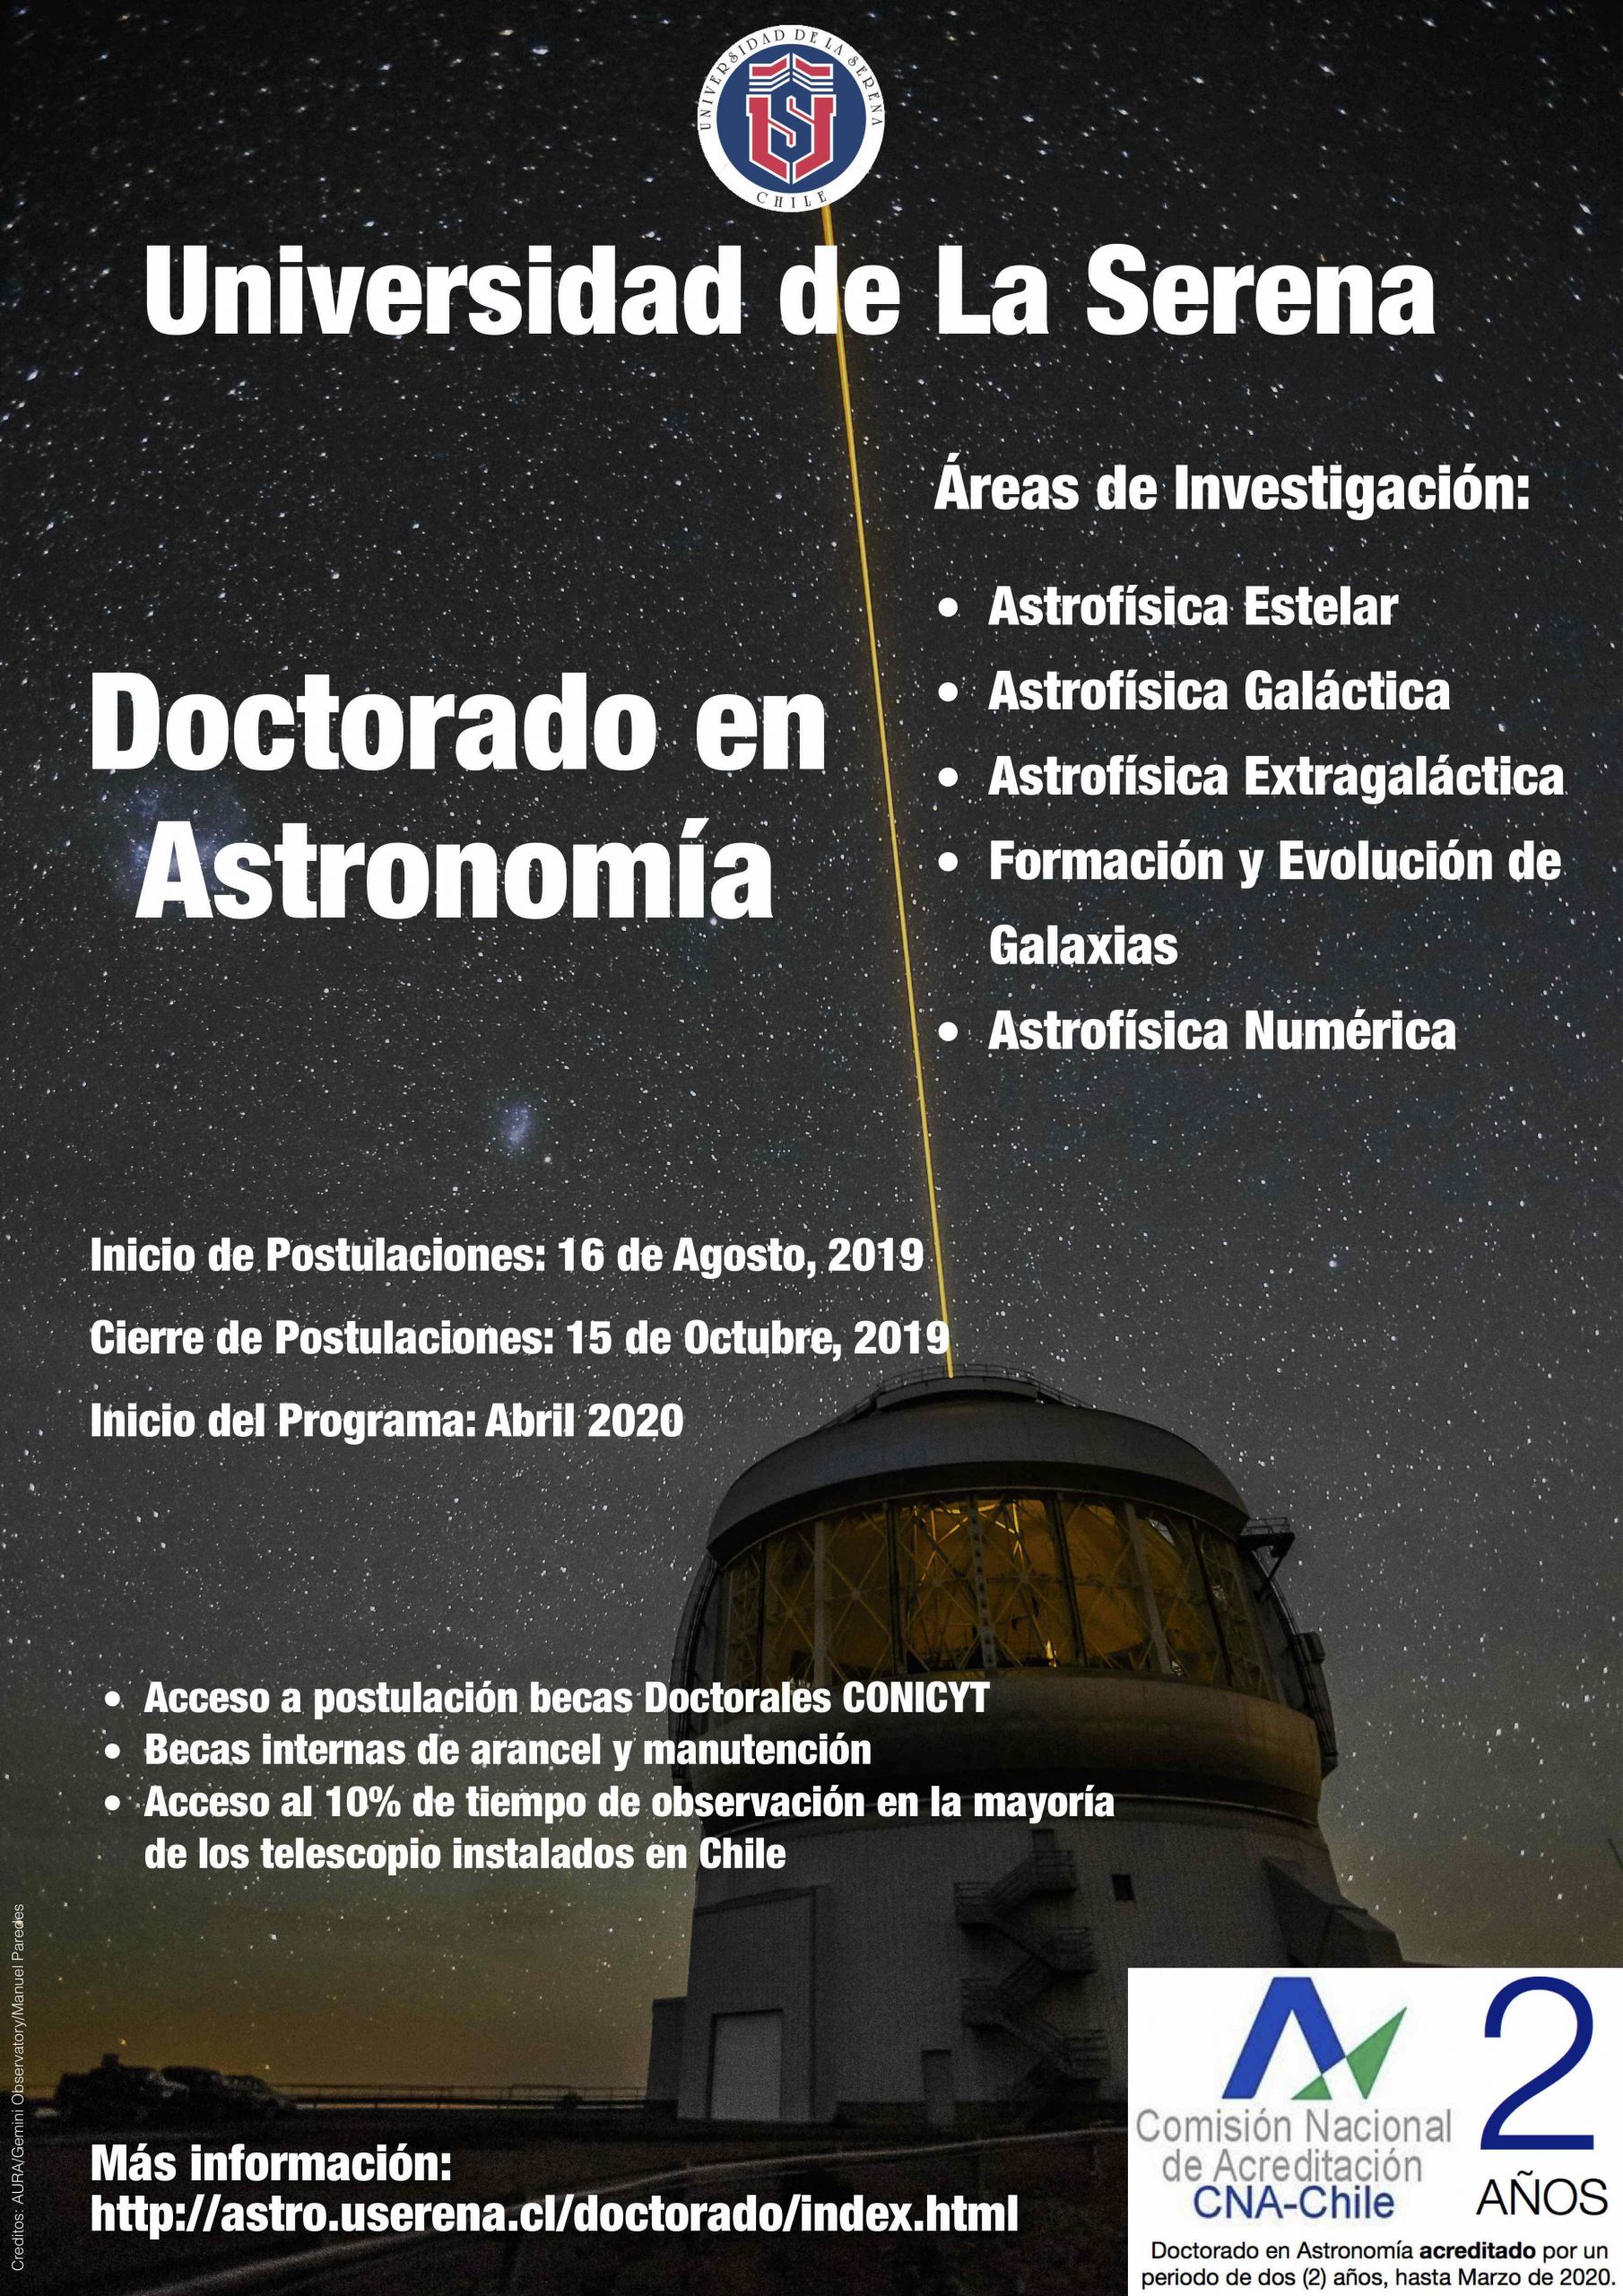 PhD positions in Astronomy at Universidad de La Serena